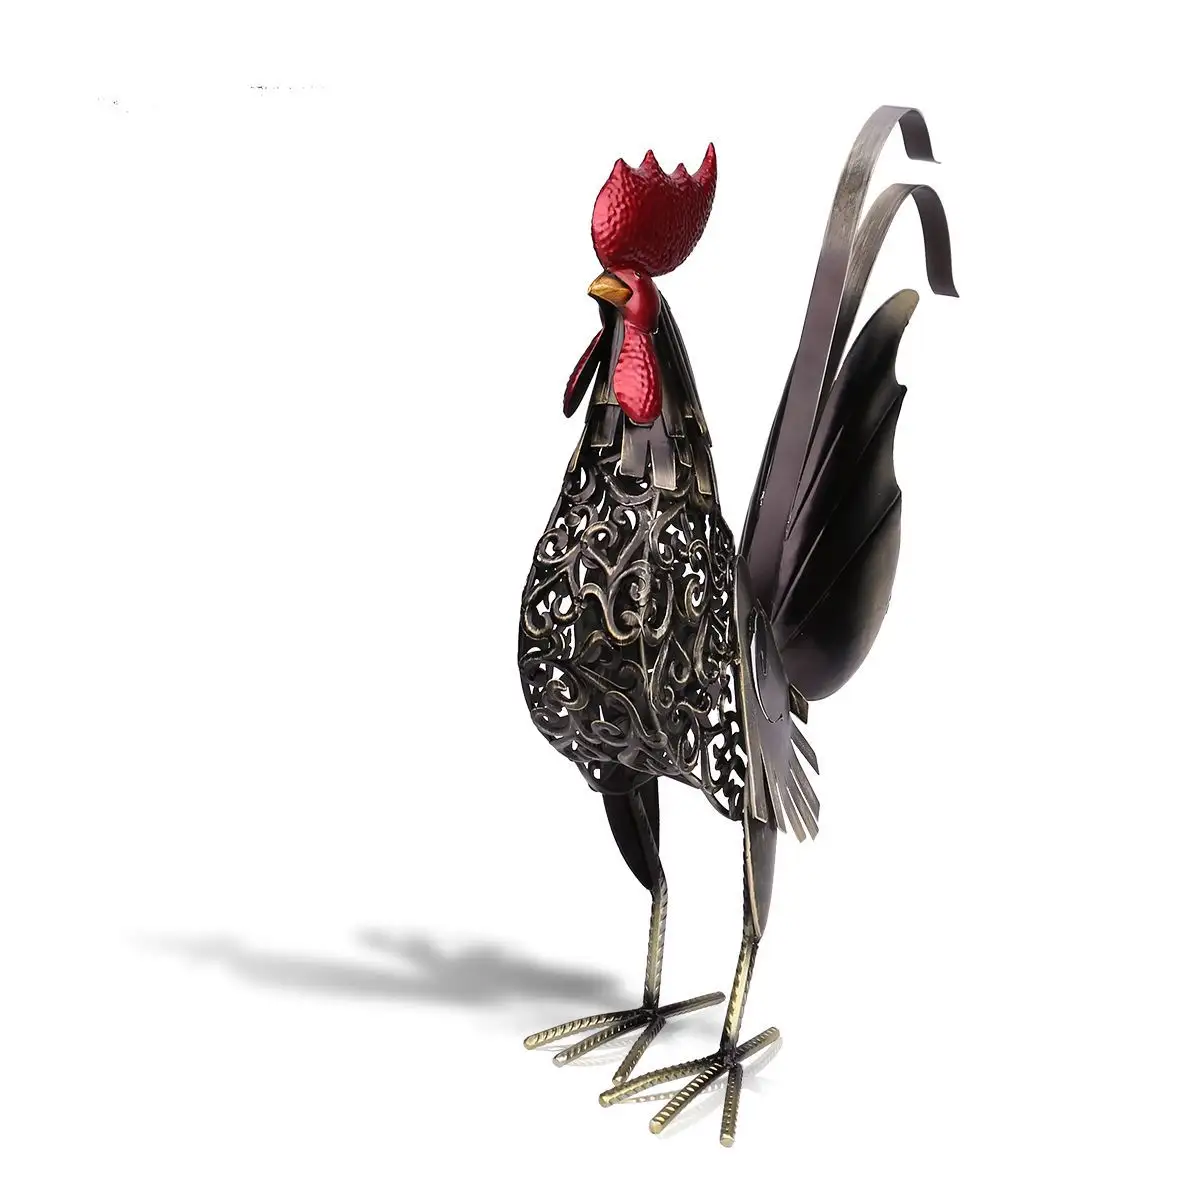 New Iron Rooster Garden Animal Đồ Trang Trí Kim Loại Thủ Công Mỹ Nghệ Tượng Gà Trống Trang Trí Nội Thất